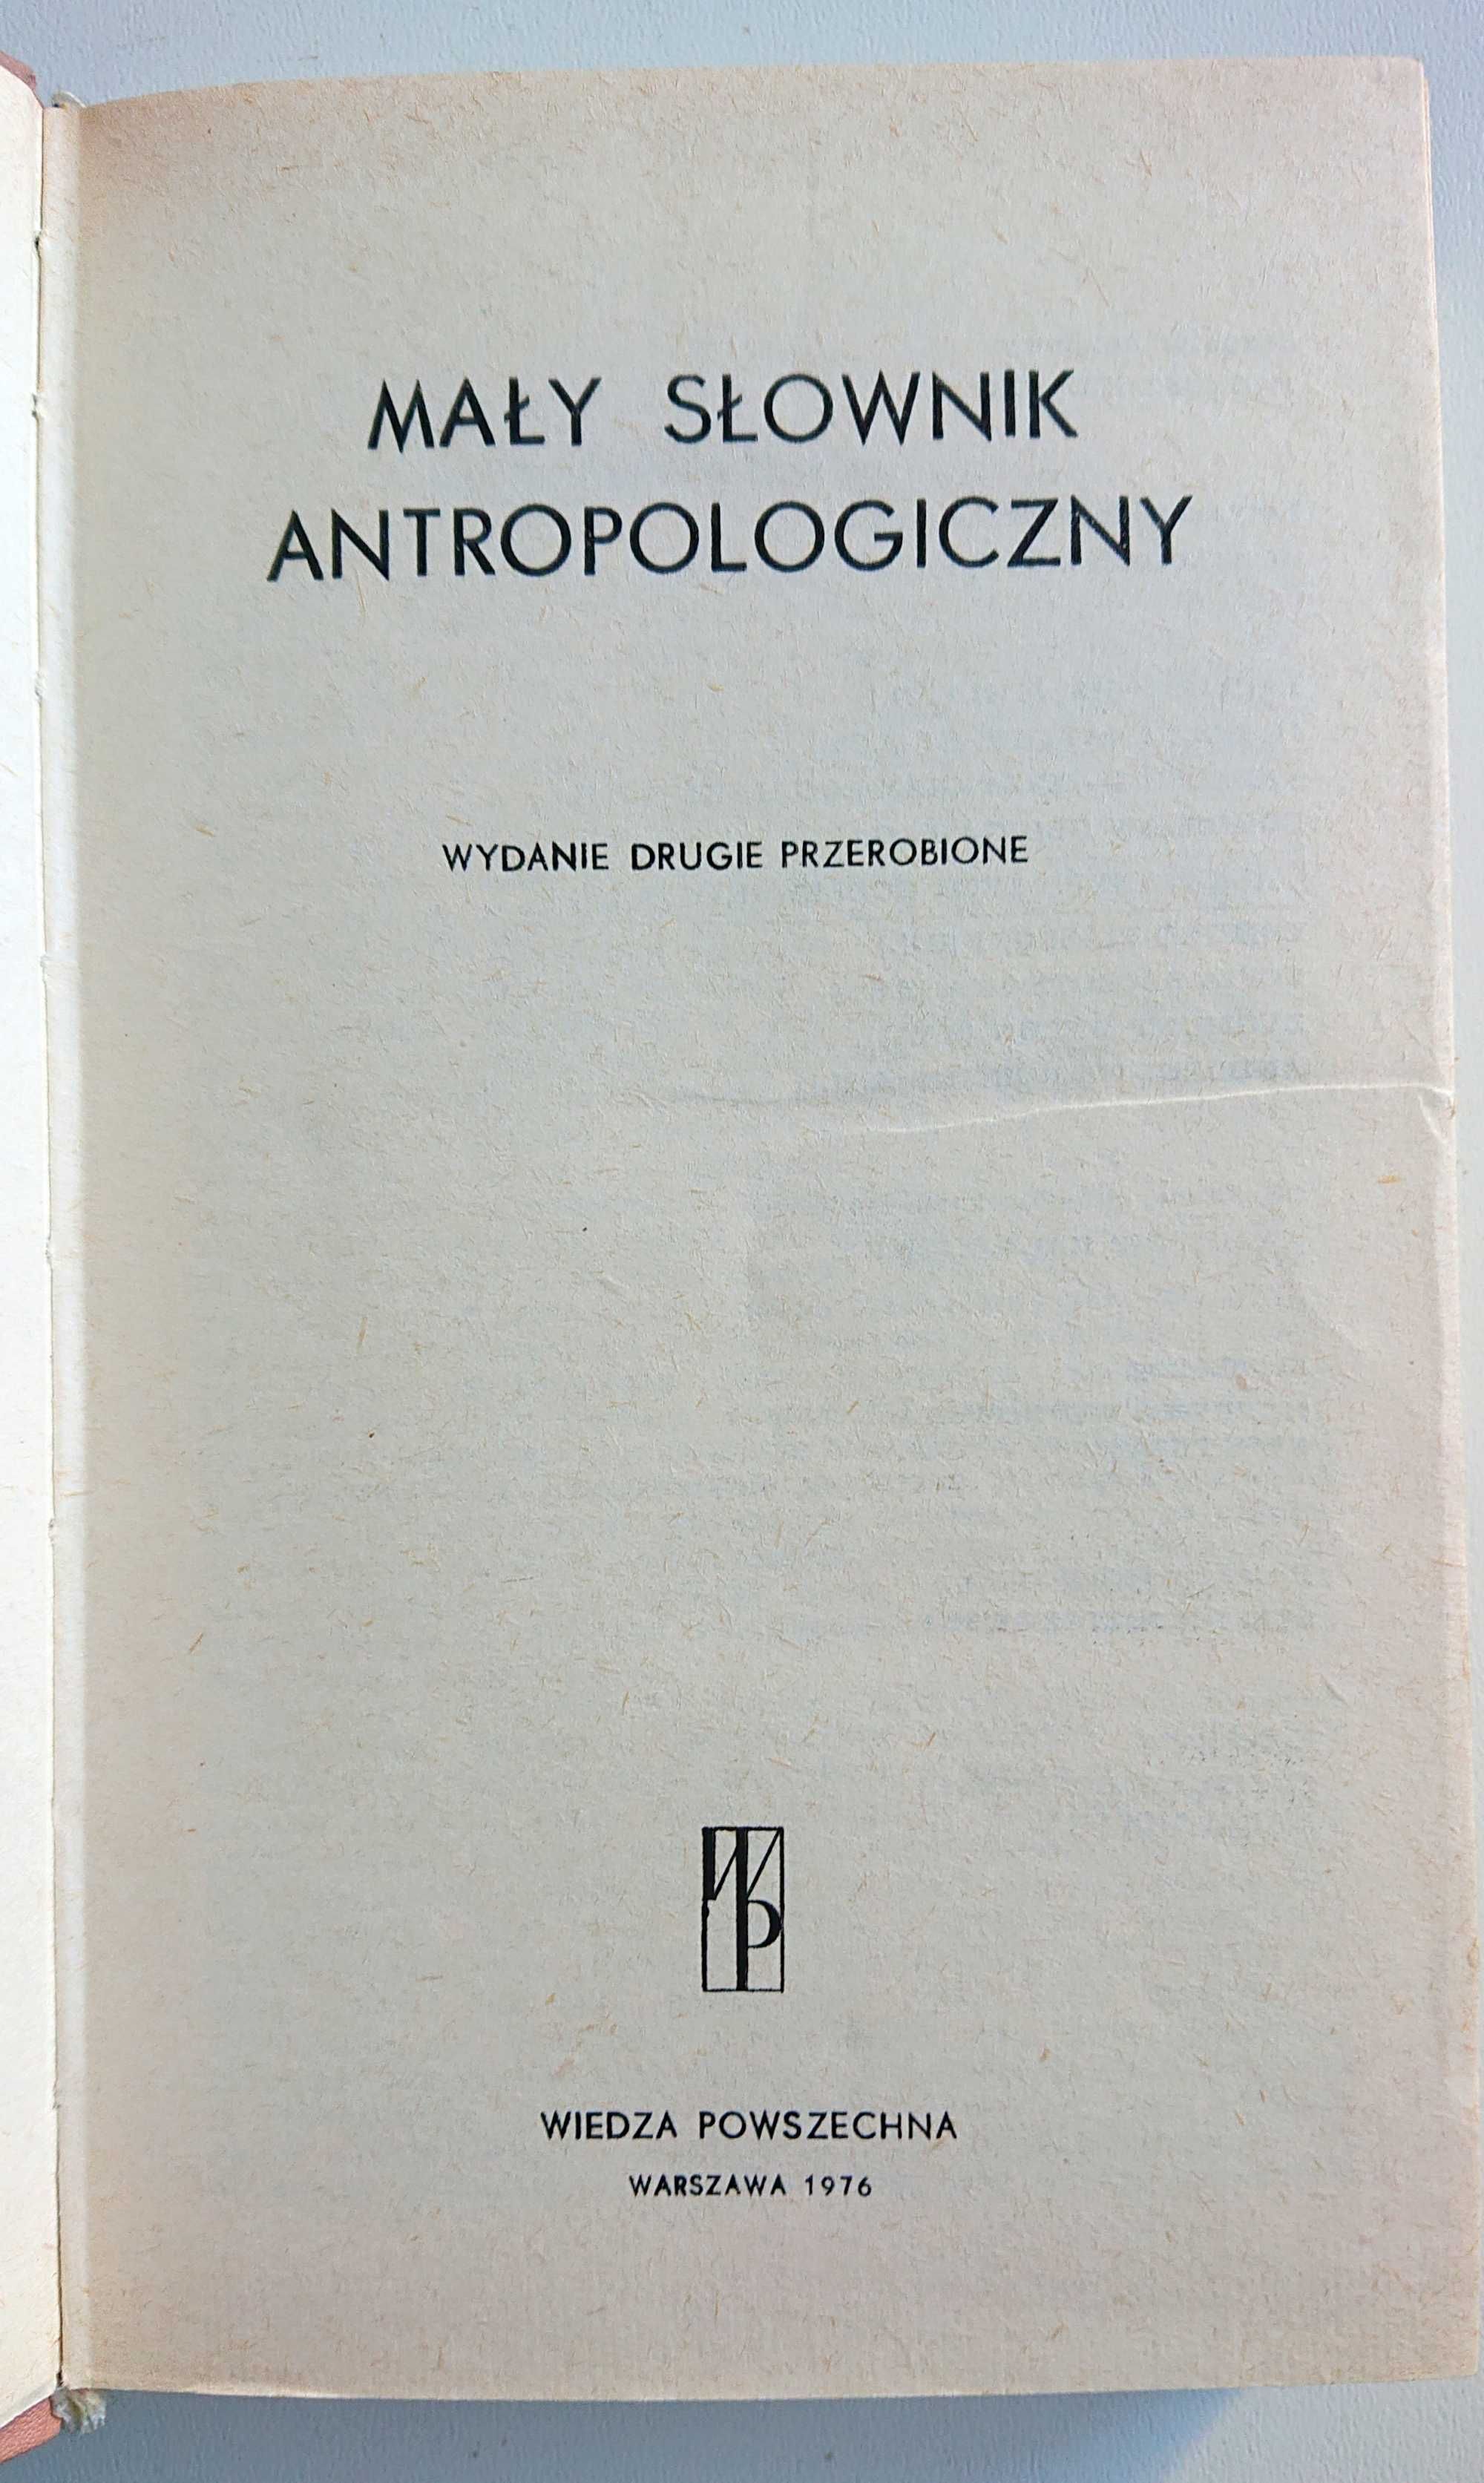 "Mały słownik antropologiczny"